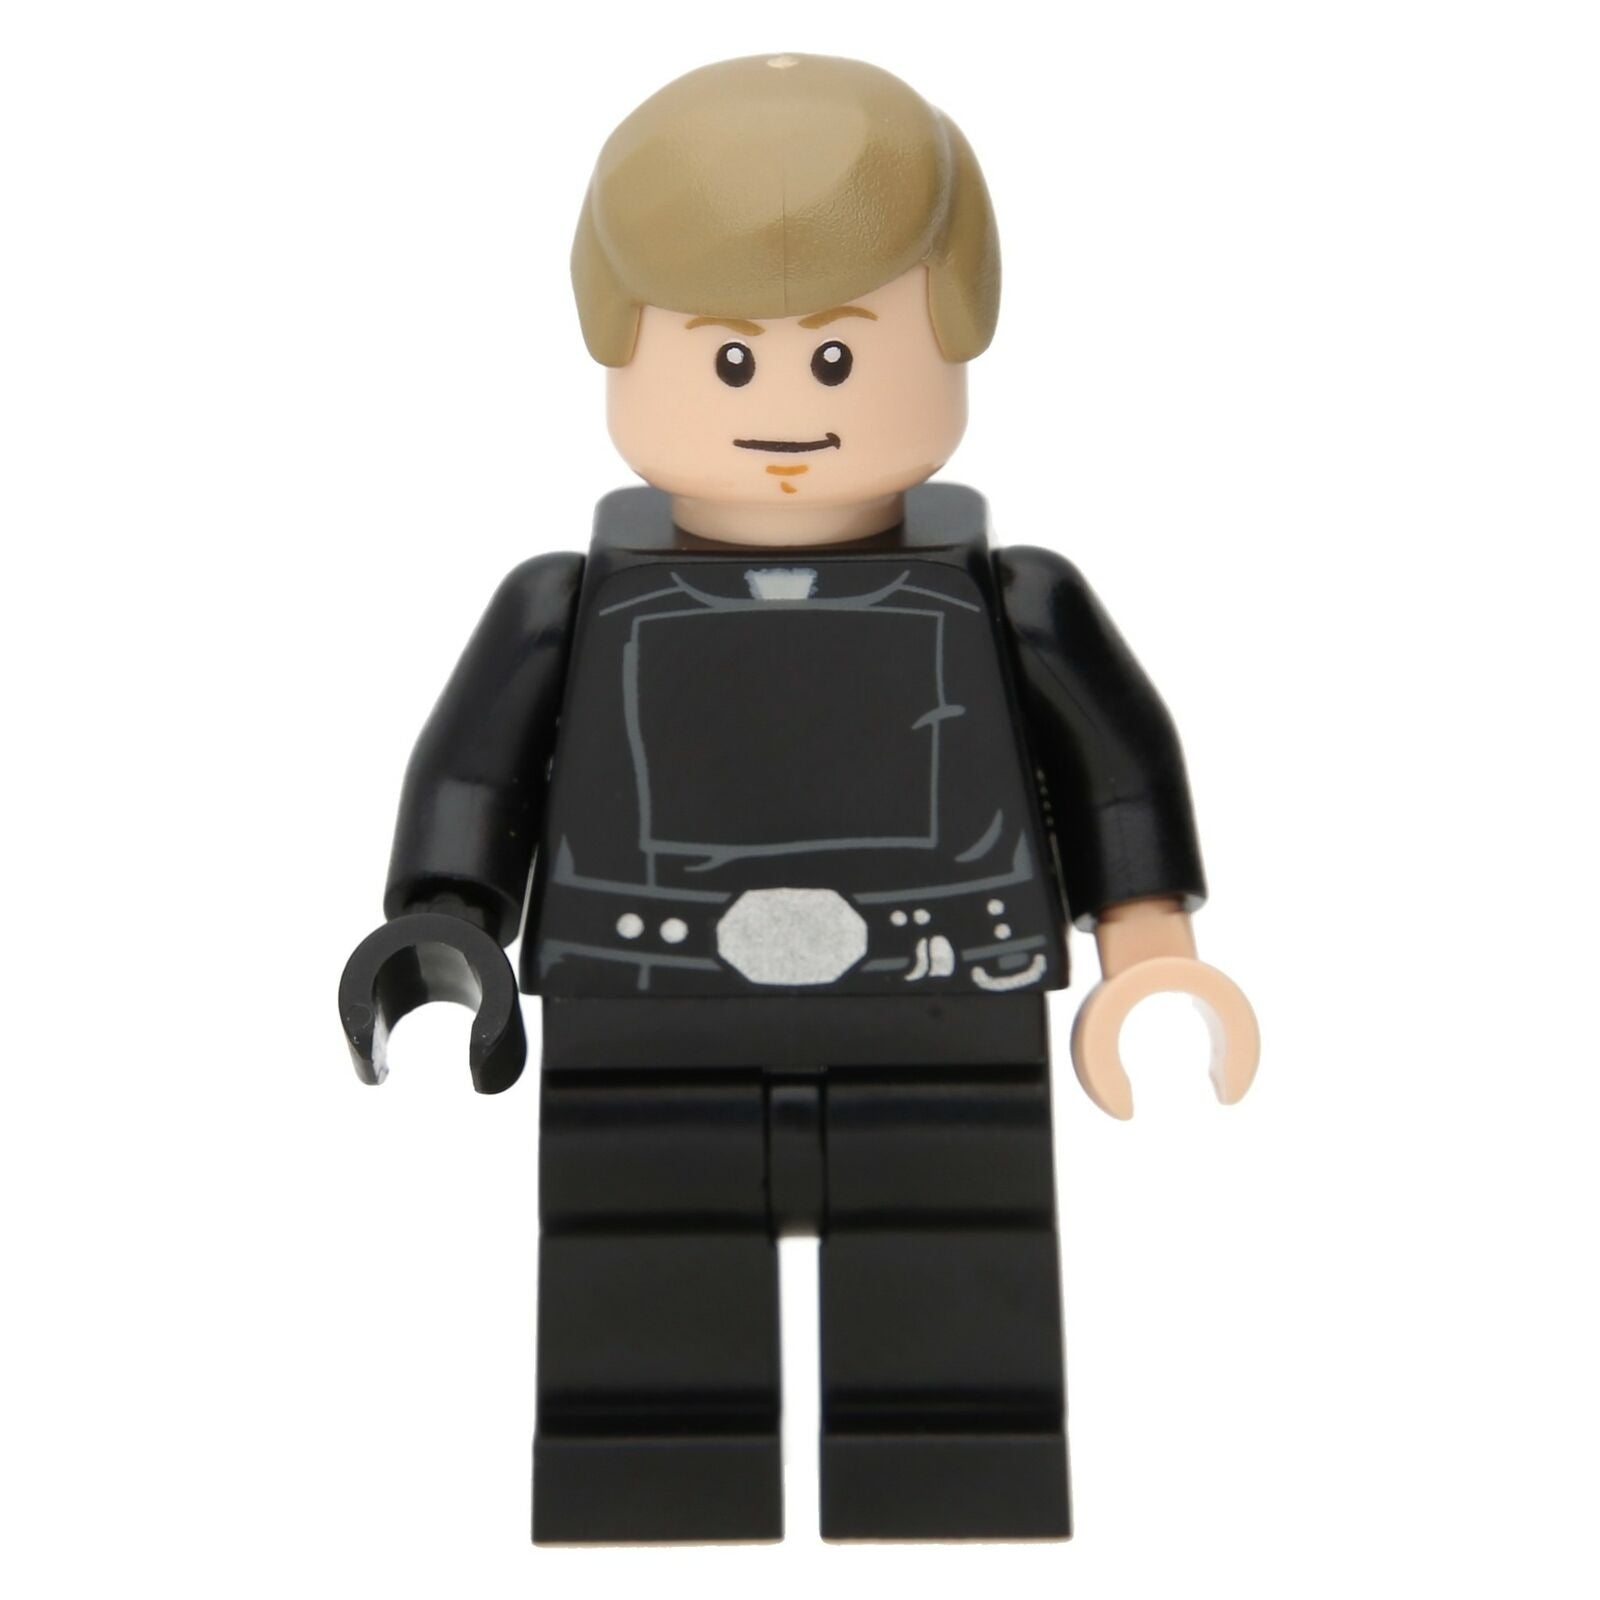 LEGO Star Wars Minifigure - Luke Skywalker (Jedi Meister)